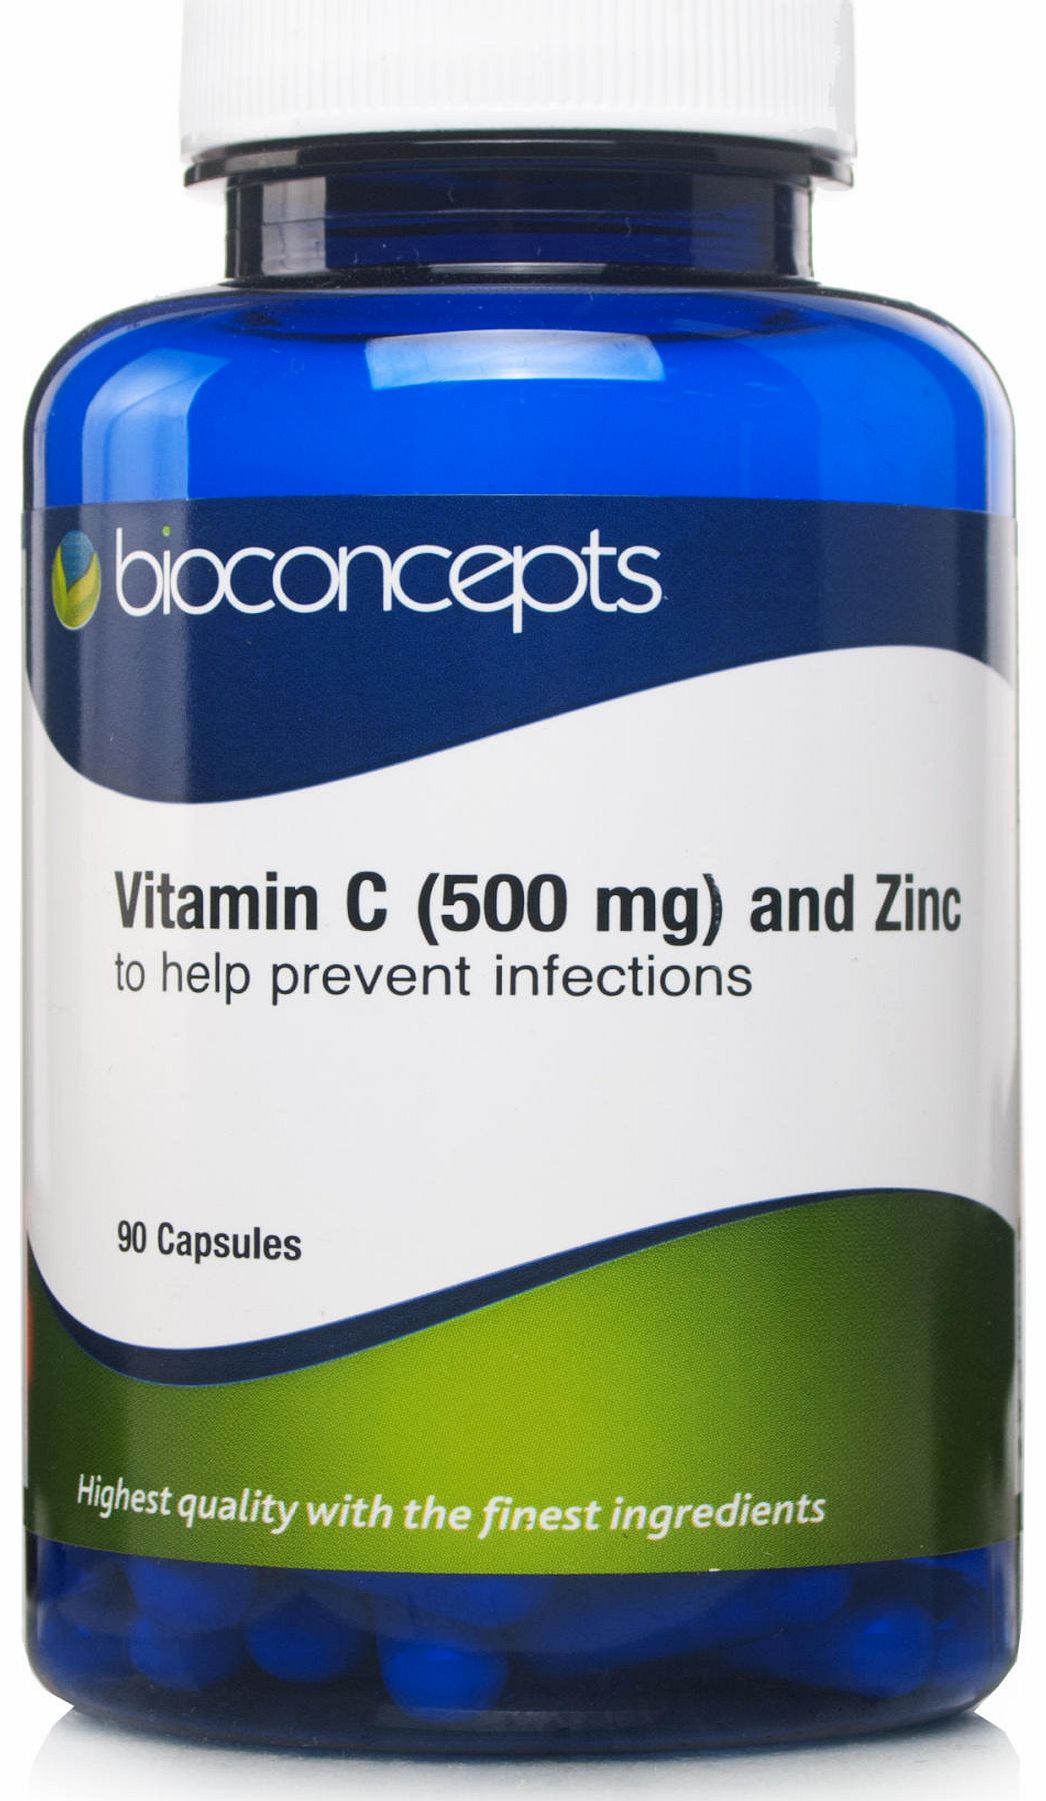 Bioconcepts Vitamin C (500mg) and Zinc